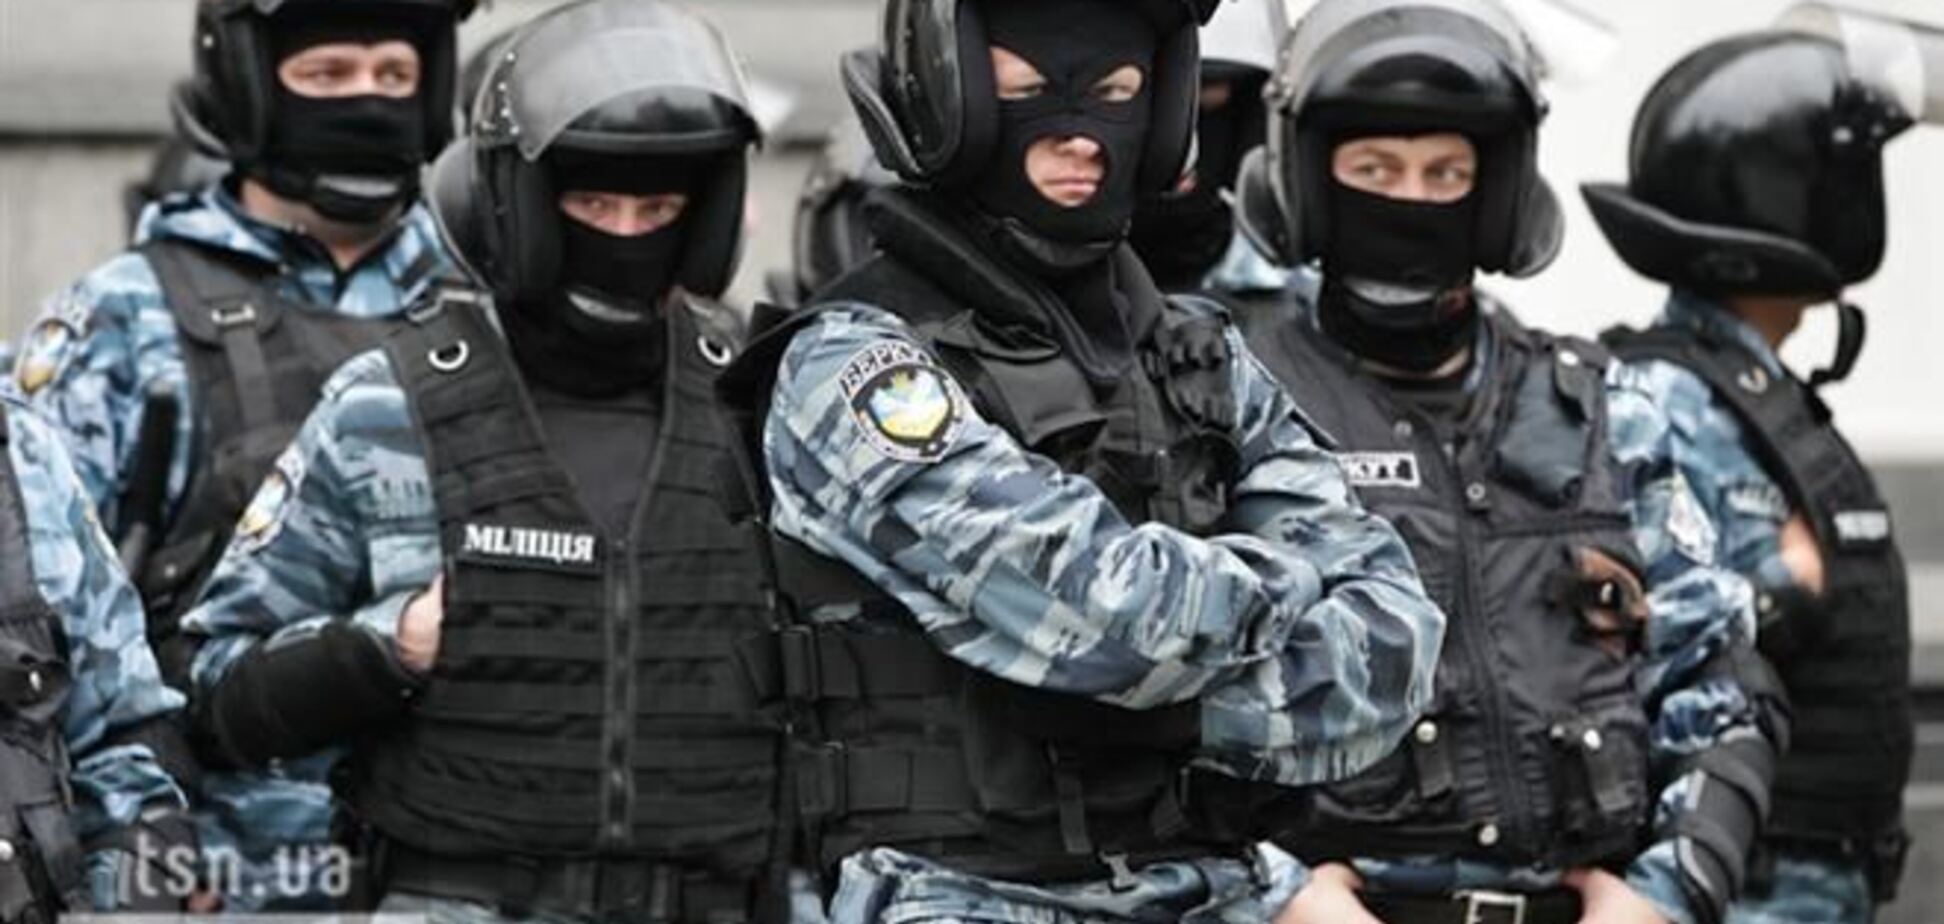 'Беркут' в Крыму взбунтовался, могут быть многочисленные жертвы - Москаль